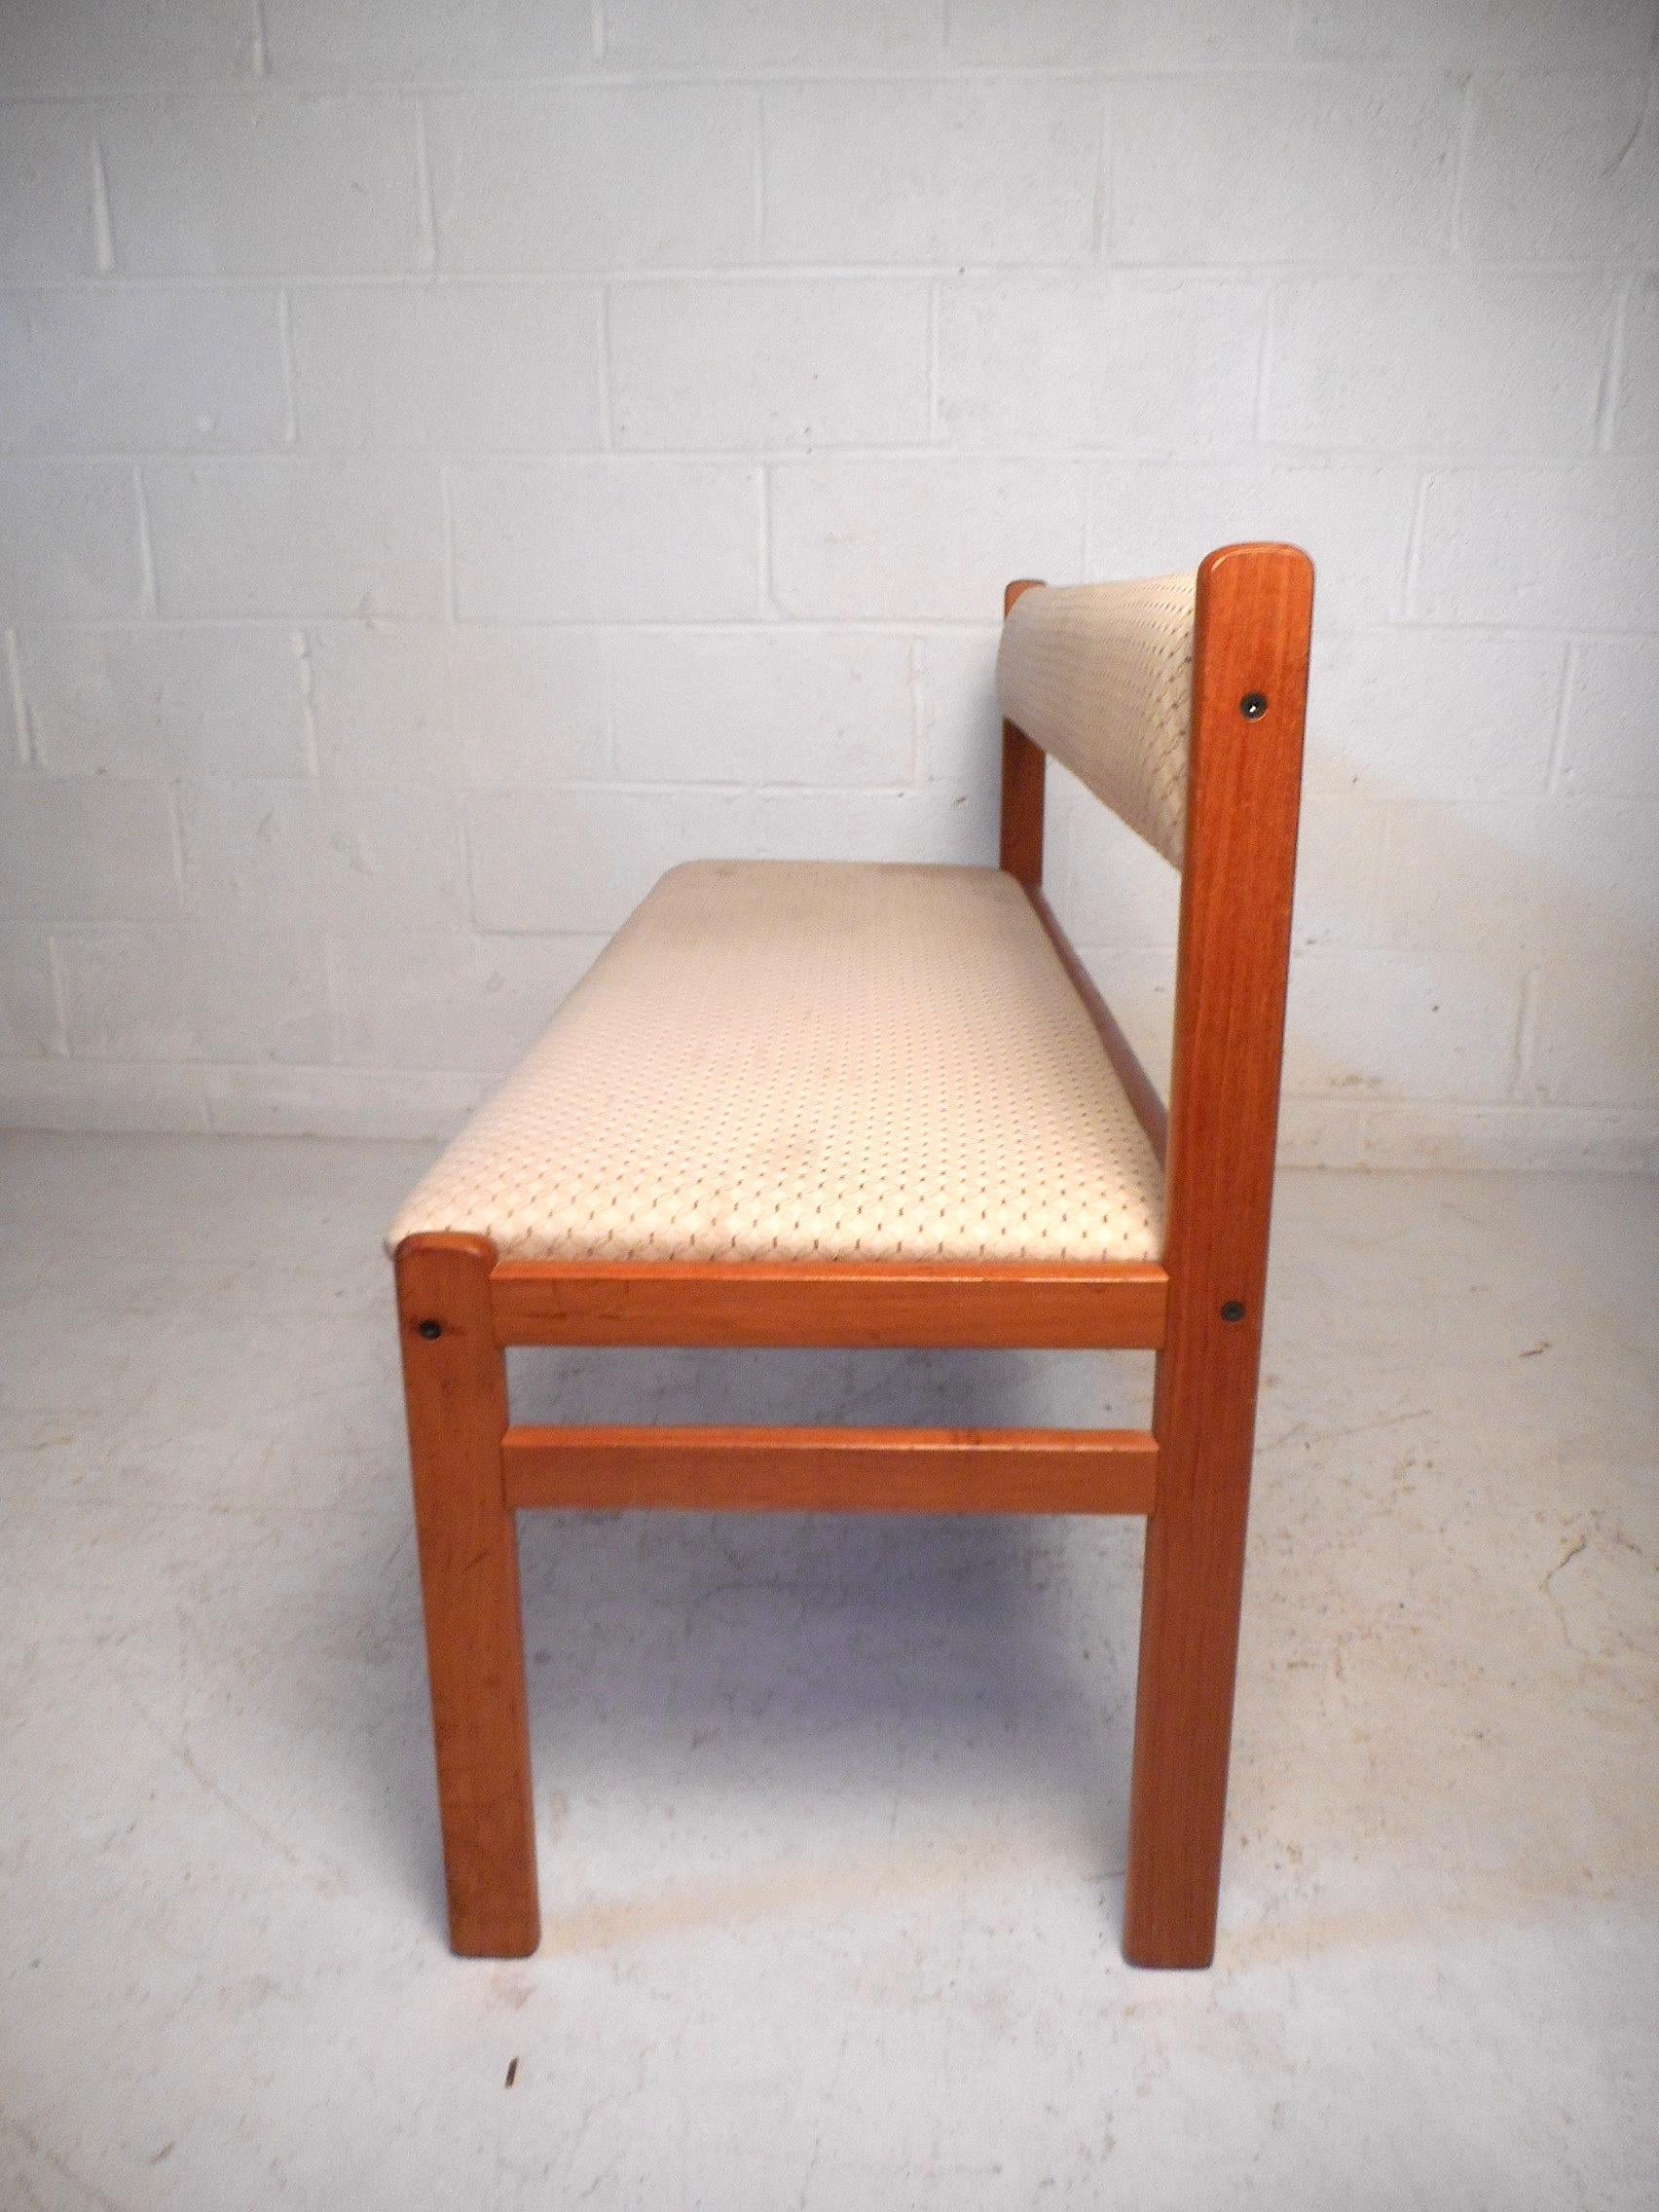 Upholstery Stunning Danish Modern Upholstered Sectional Bench